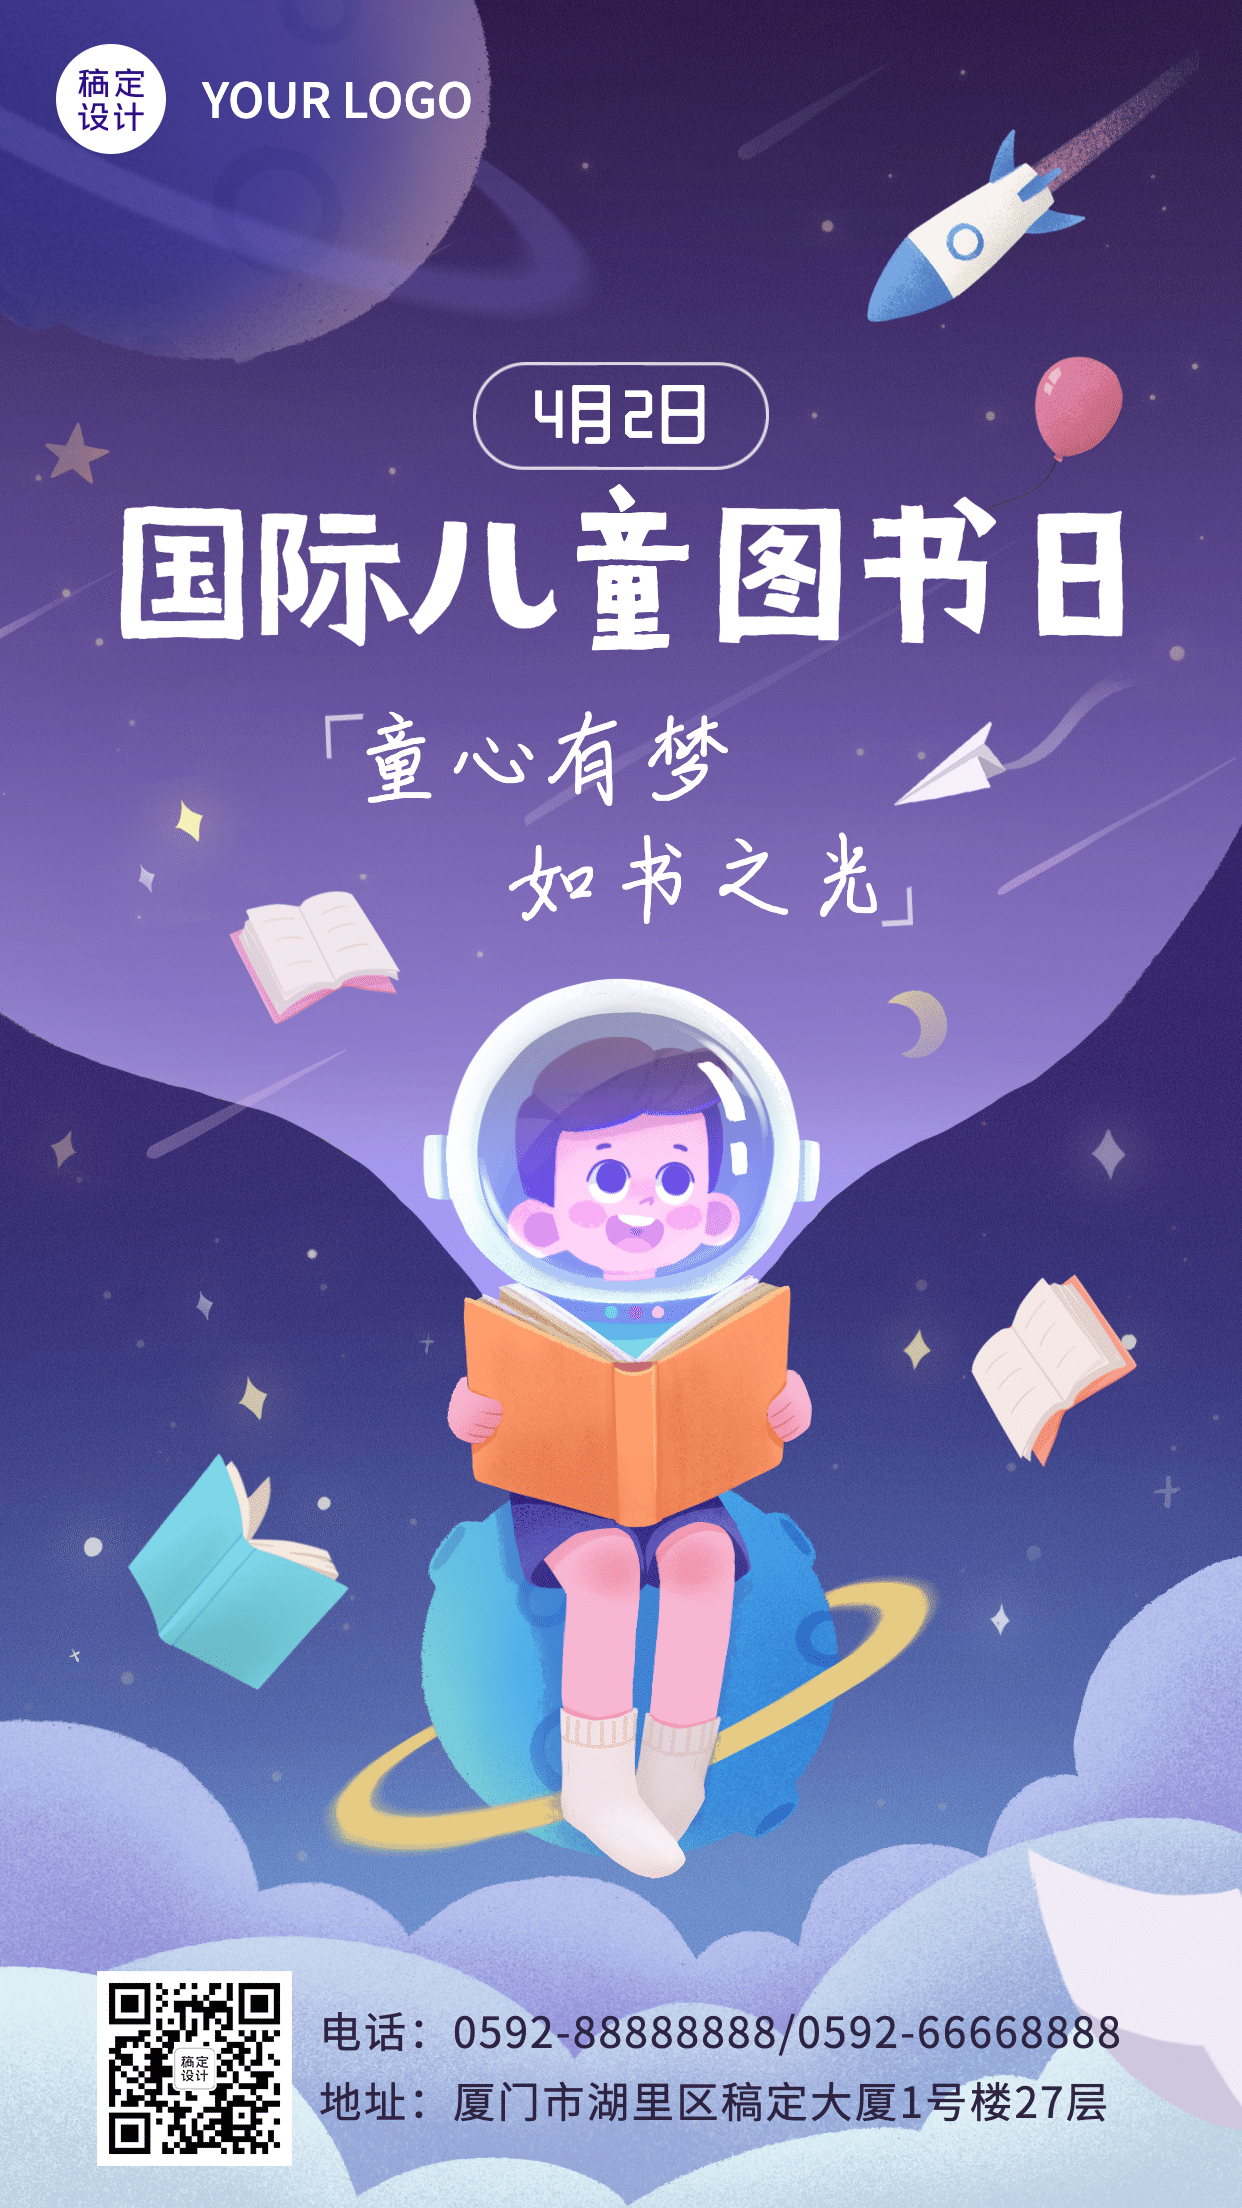 国际儿童图书日海报